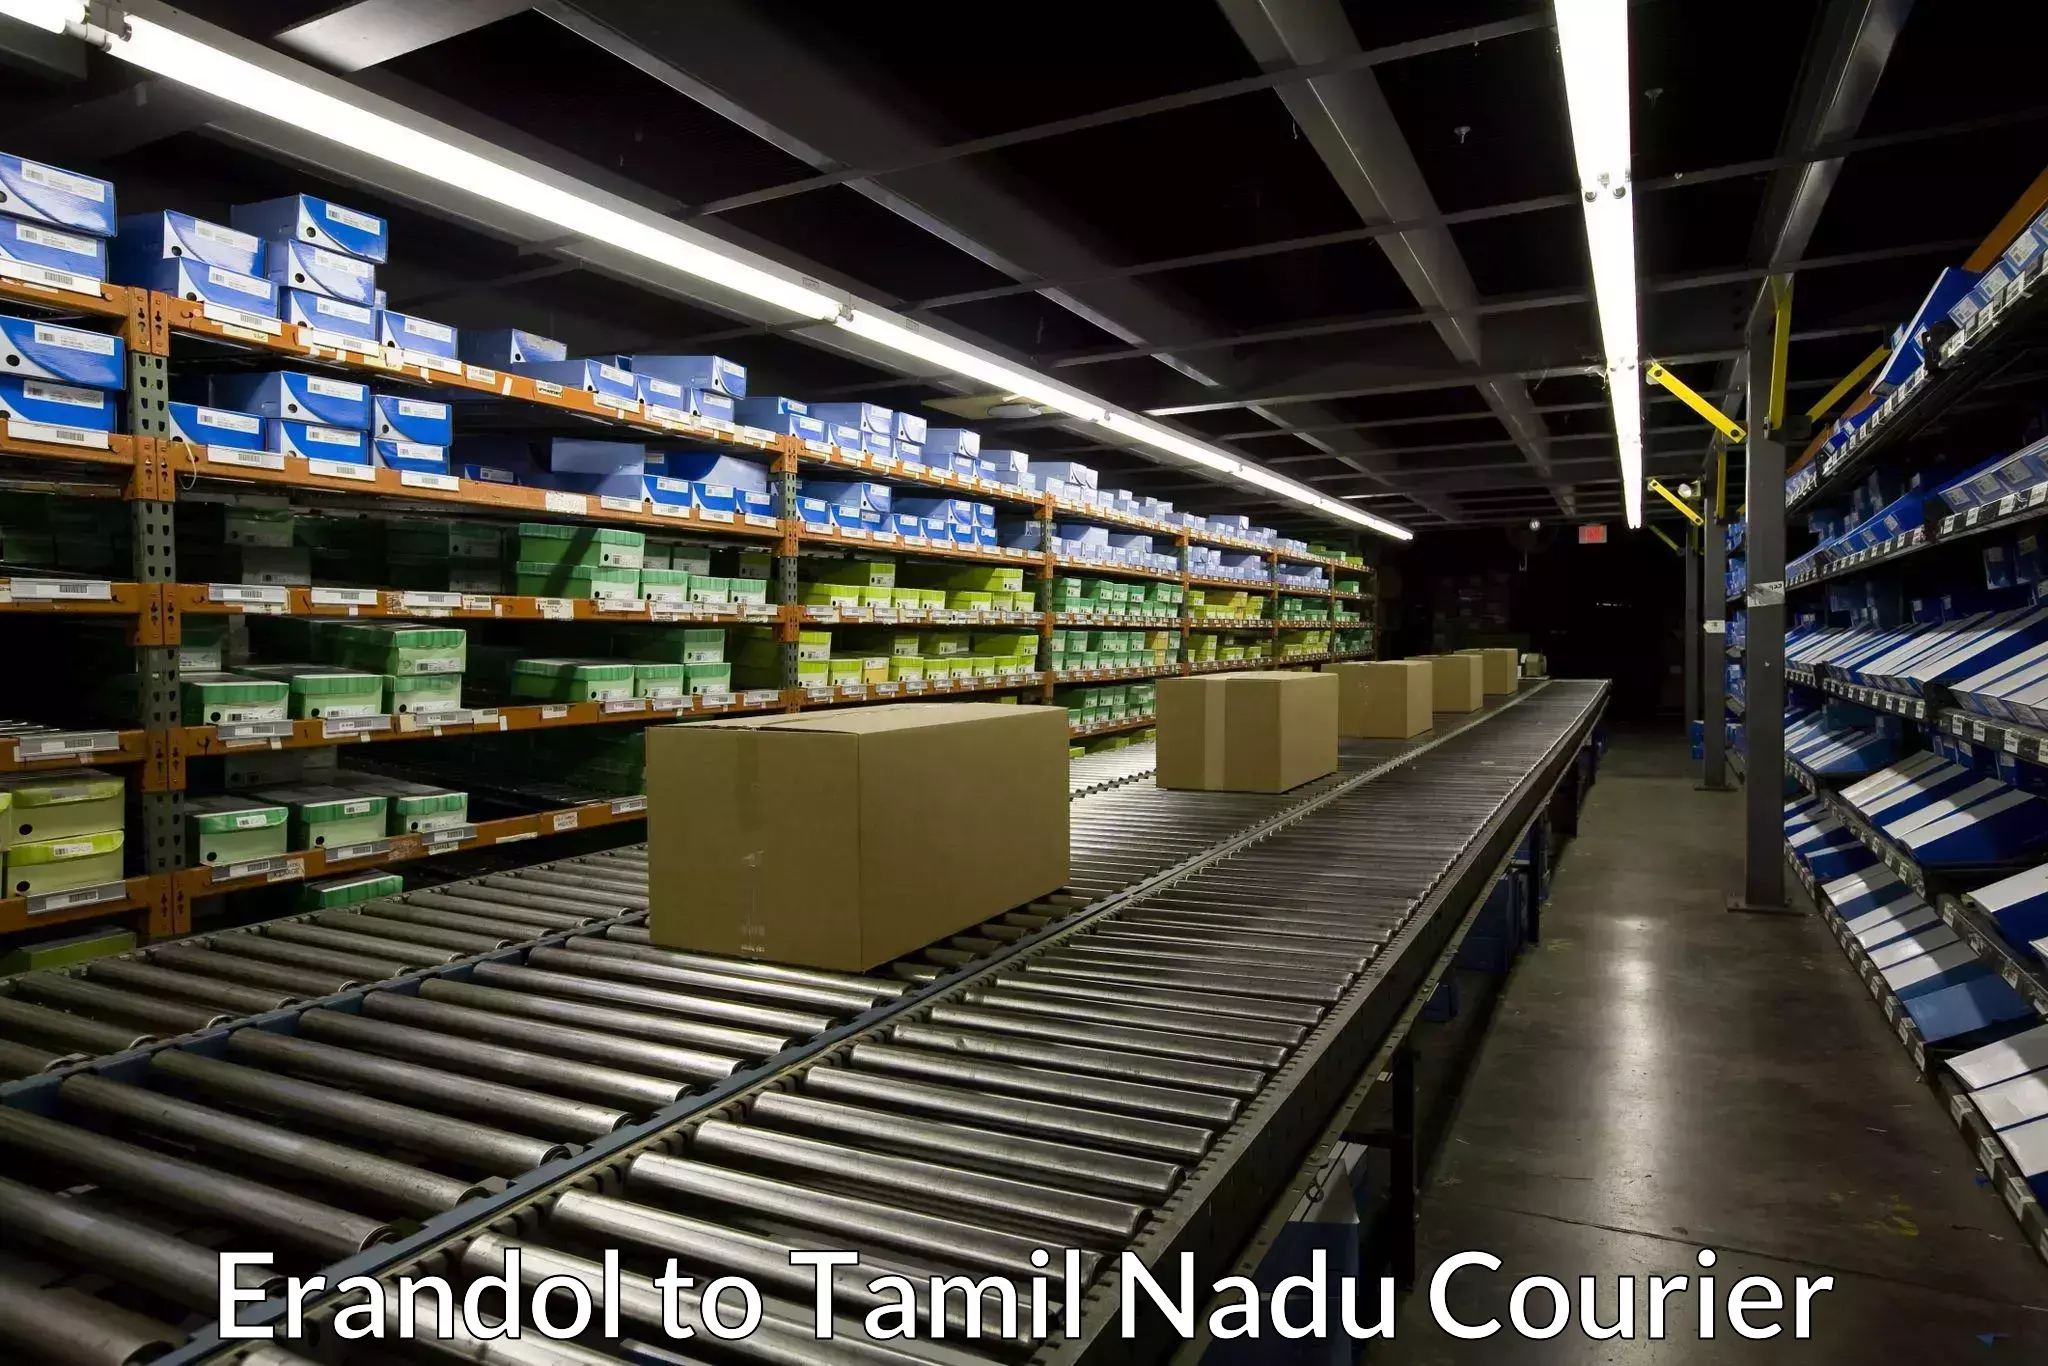 Next day courier Erandol to Tamil Nadu